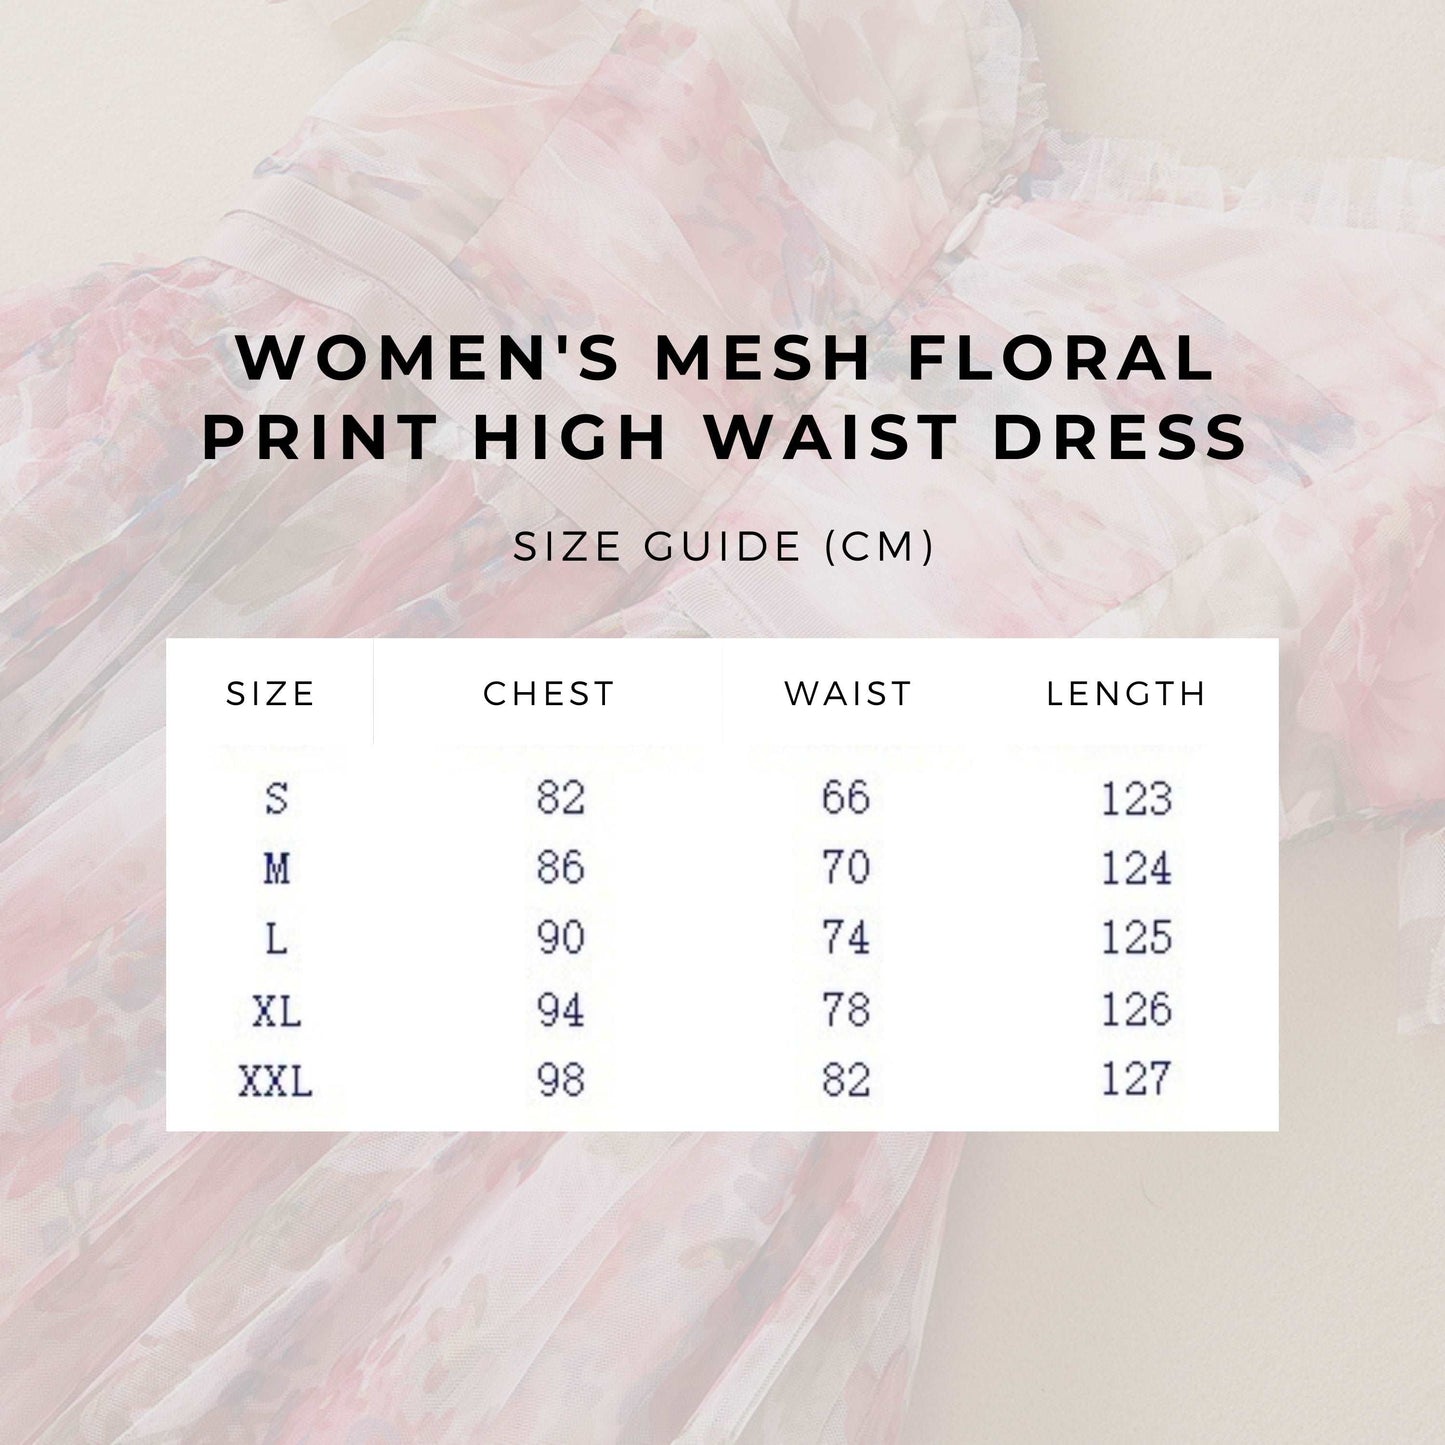 Women's Mesh Floral Print High Waist Dress